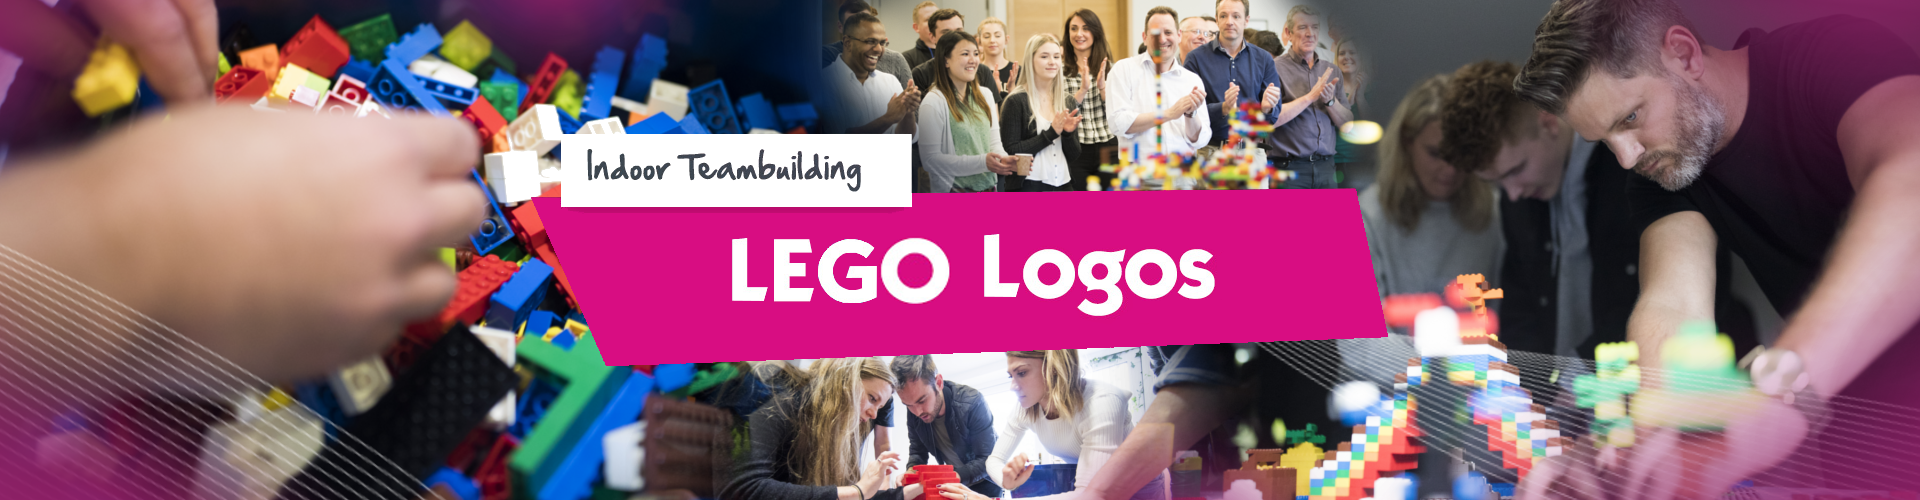 LEGO Logos